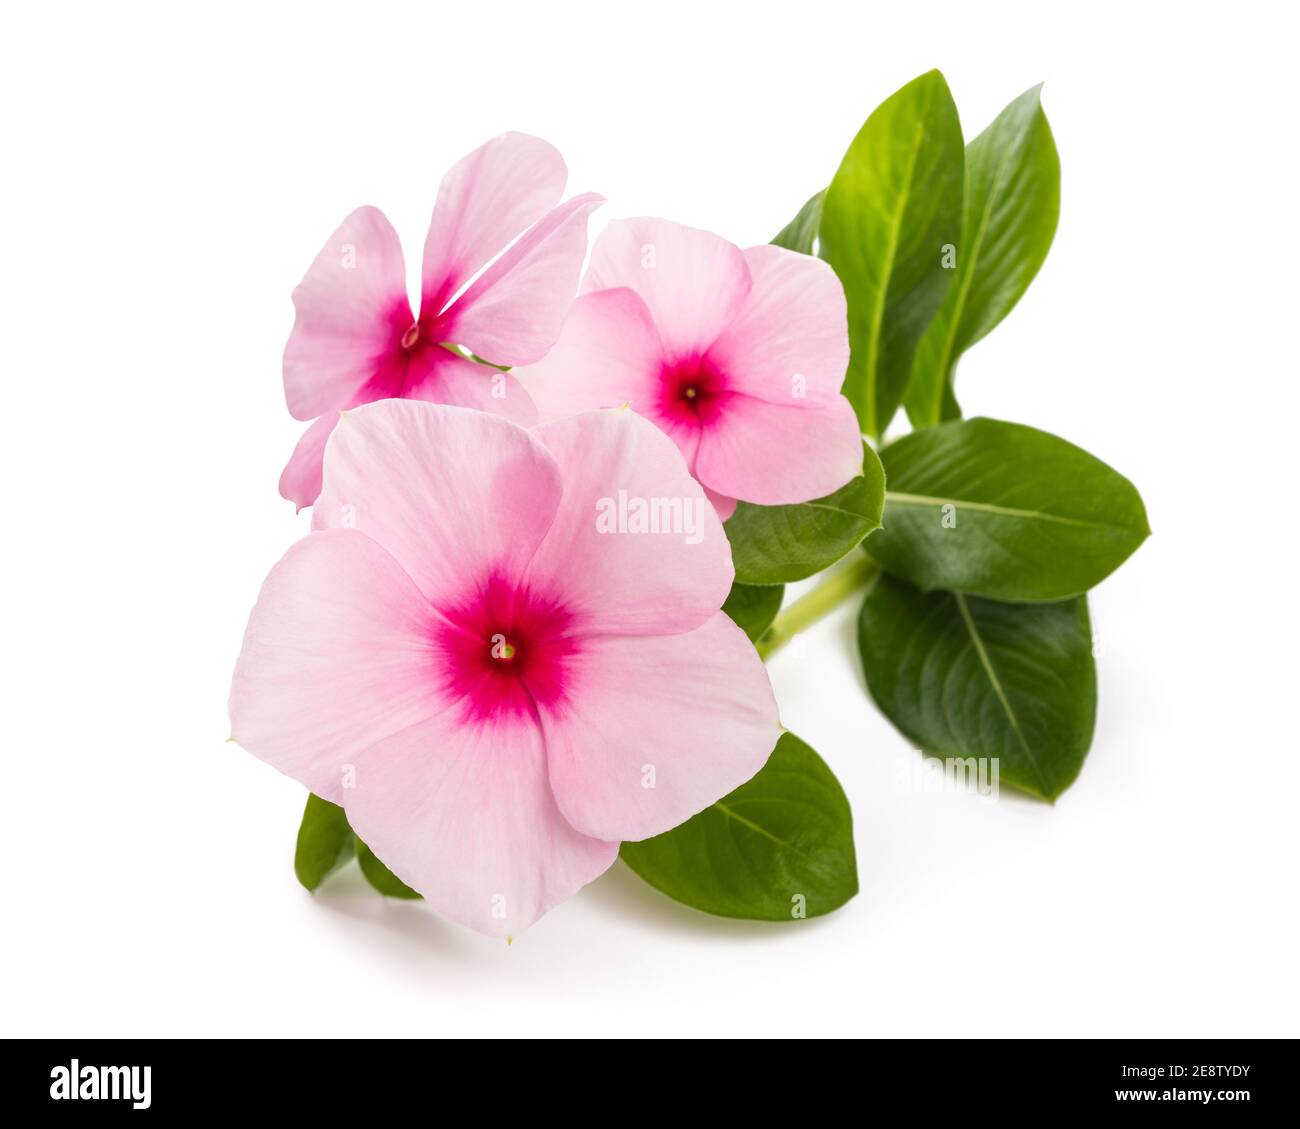 Madagascar periwinkle flowers isolated on white background Stock Photo